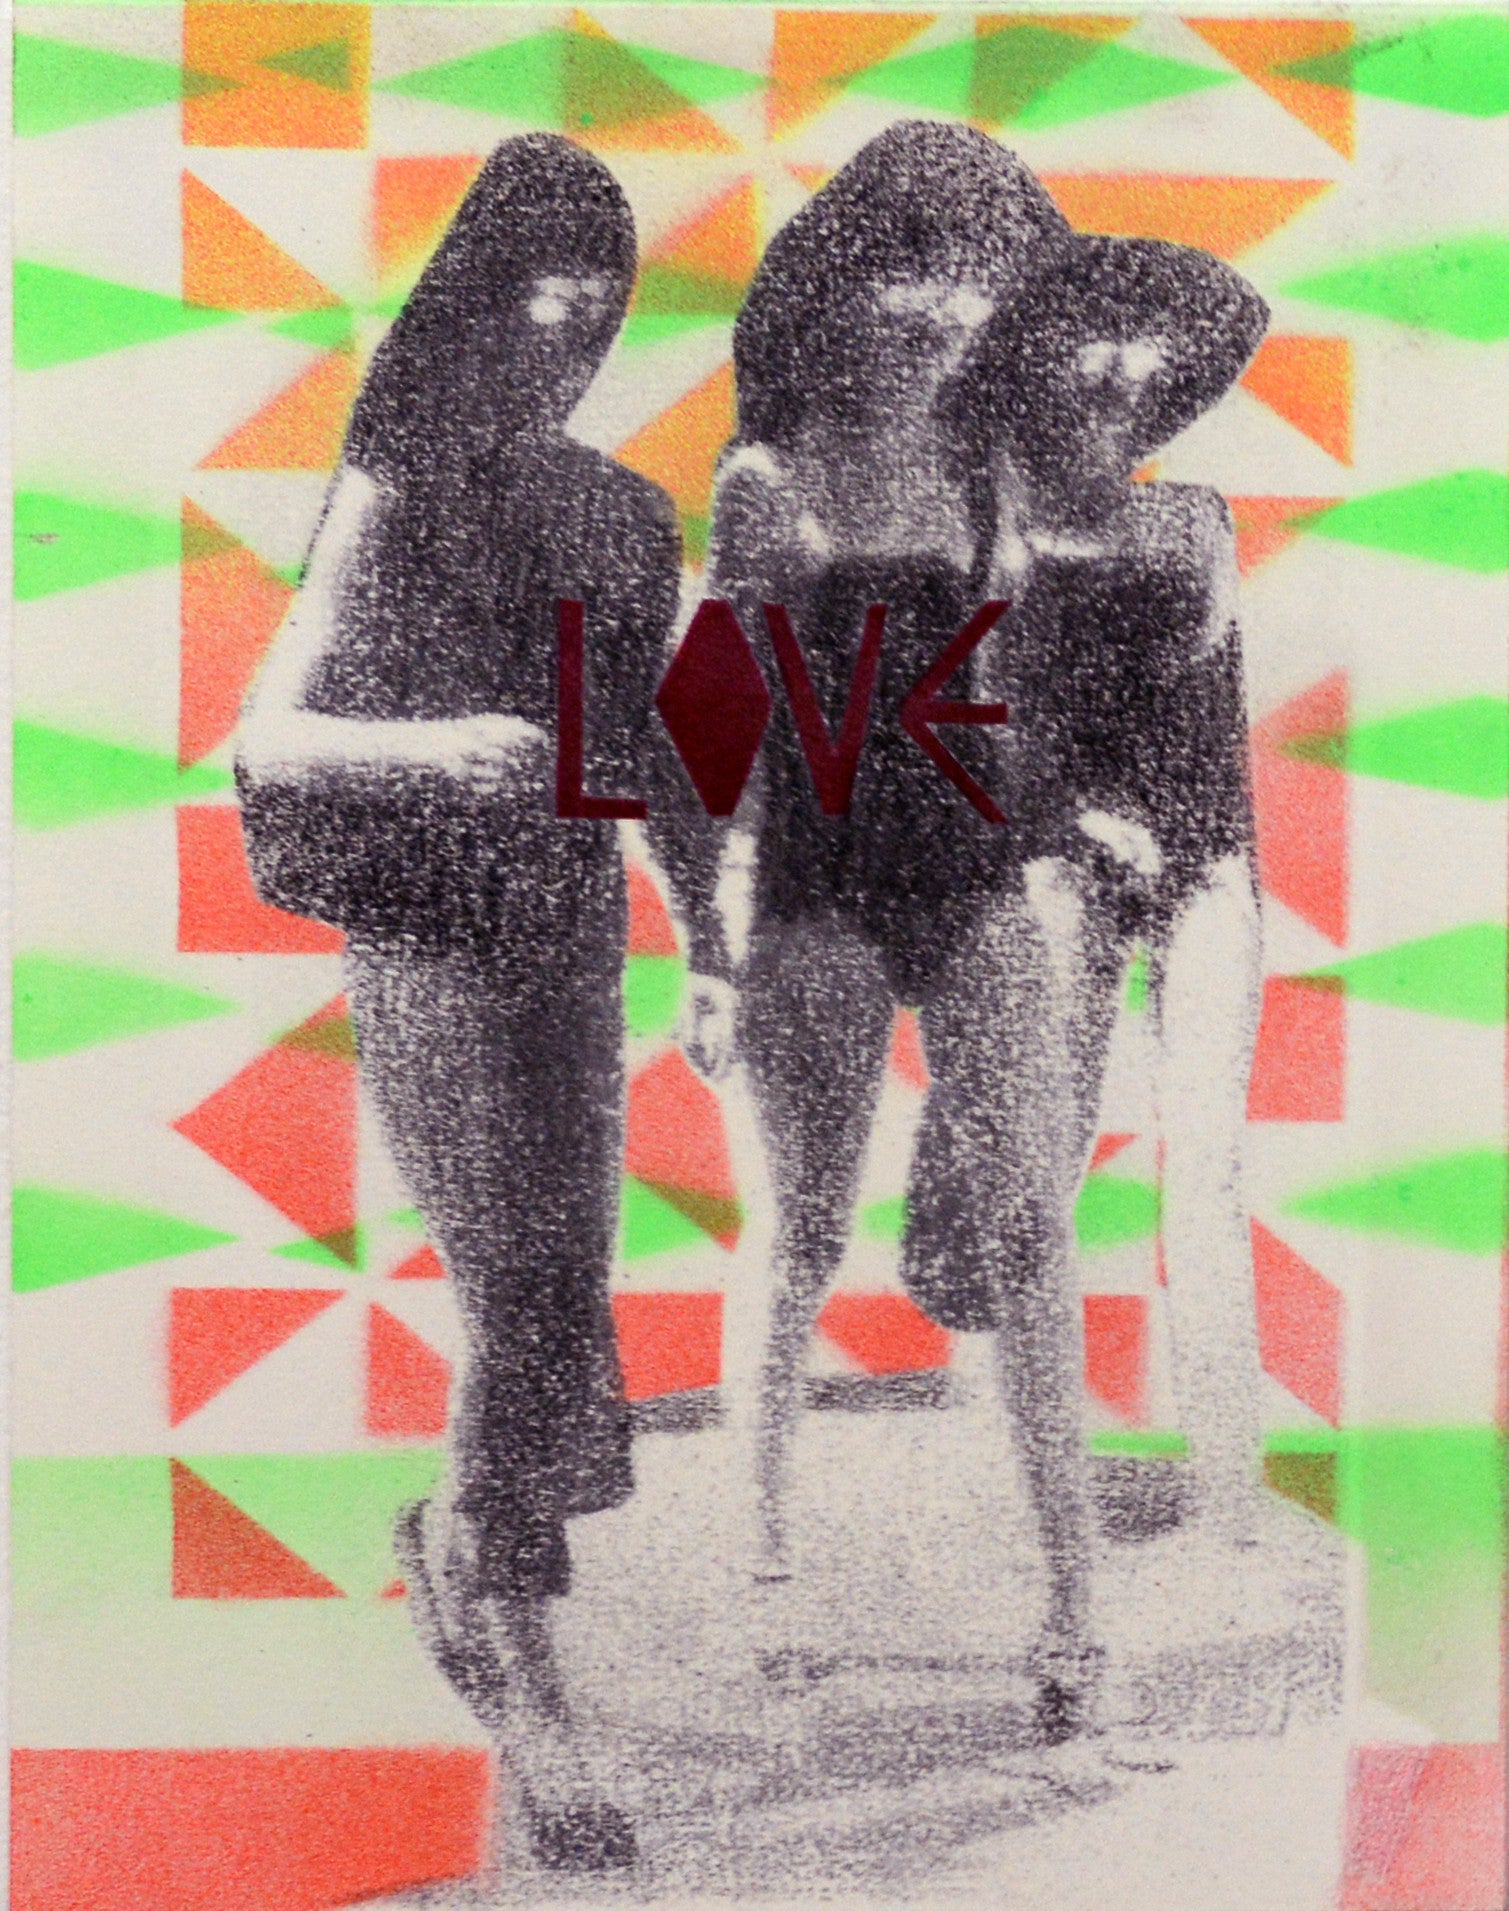 Kristen Schiele, "Love"